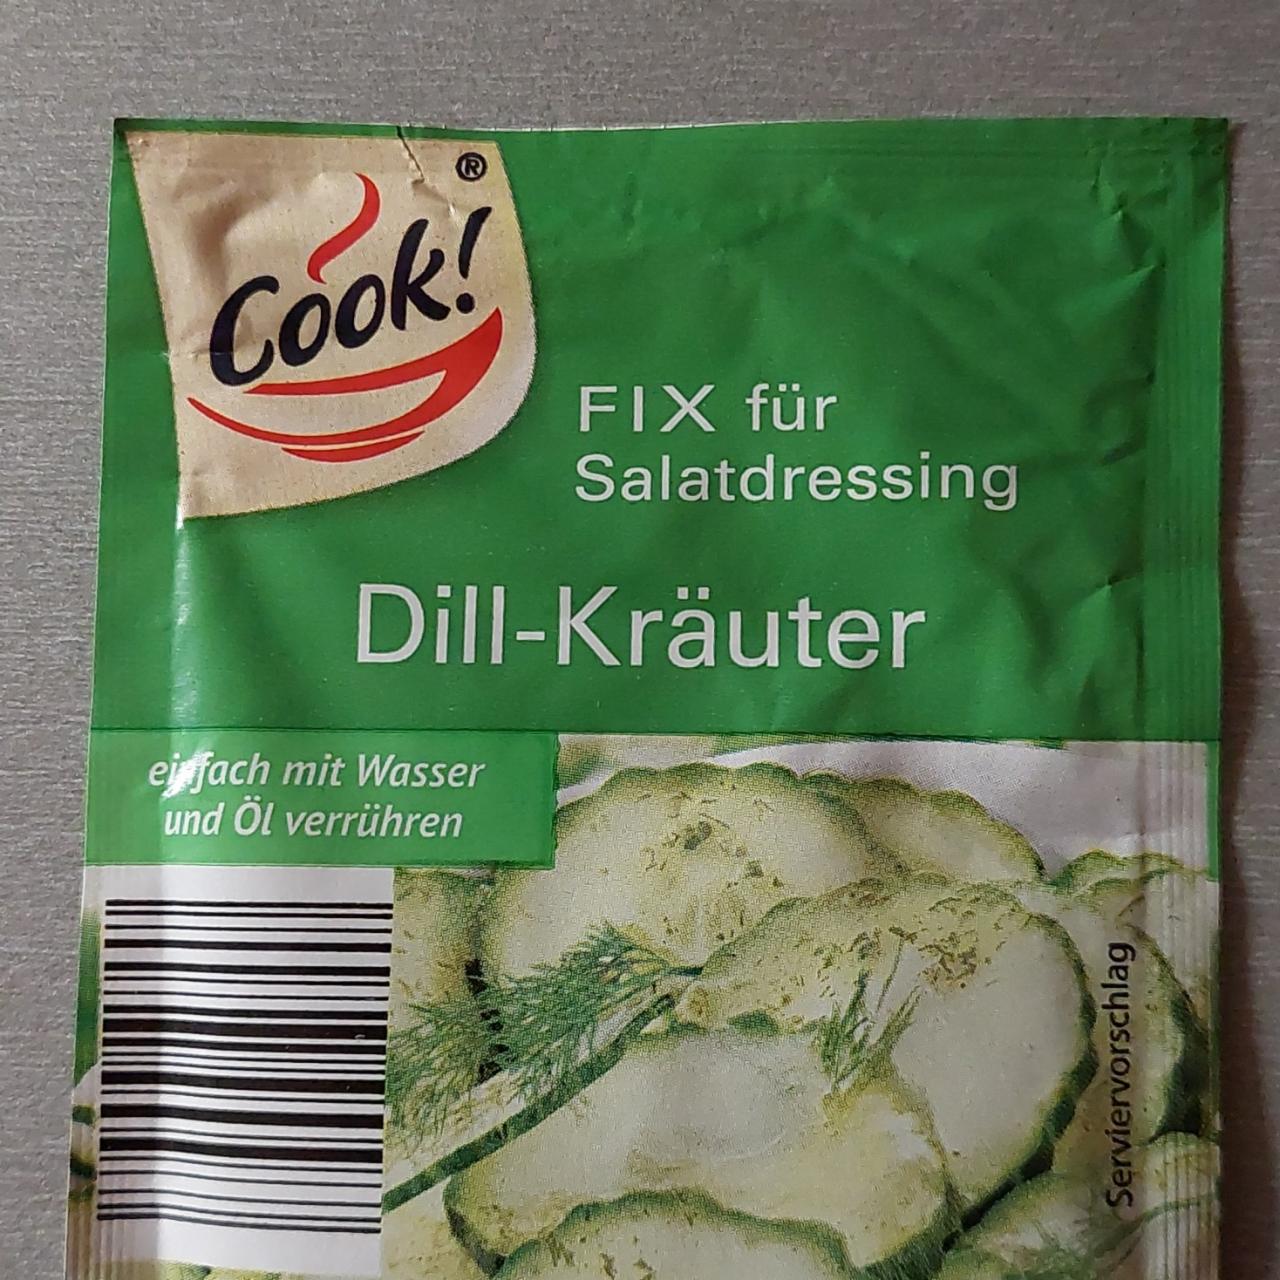 Fotografie - Dill-Kräuter Fix für Salatdressing Cook!